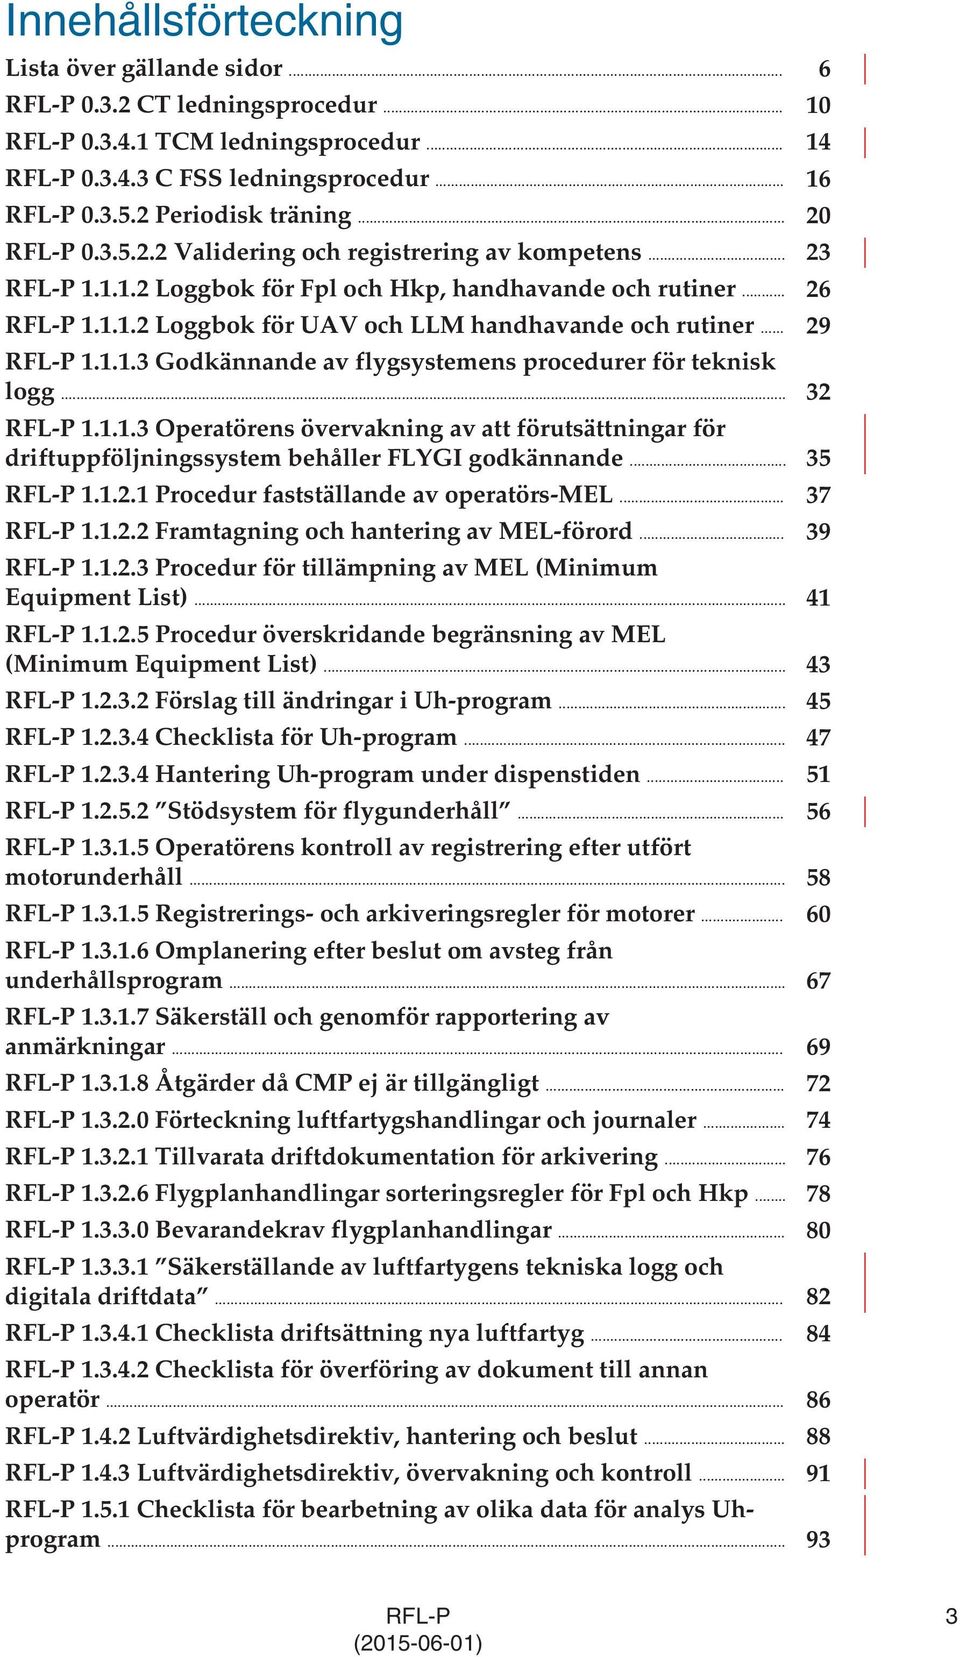 .. 29 RFL-P 1.1.1.3 Godkännande av flygsystemens procedurer för teknisk logg... 32 RFL-P 1.1.1.3 Operatörens övervakning av att förutsättningar för driftuppföljningssystem behåller FLYGI godkännande.